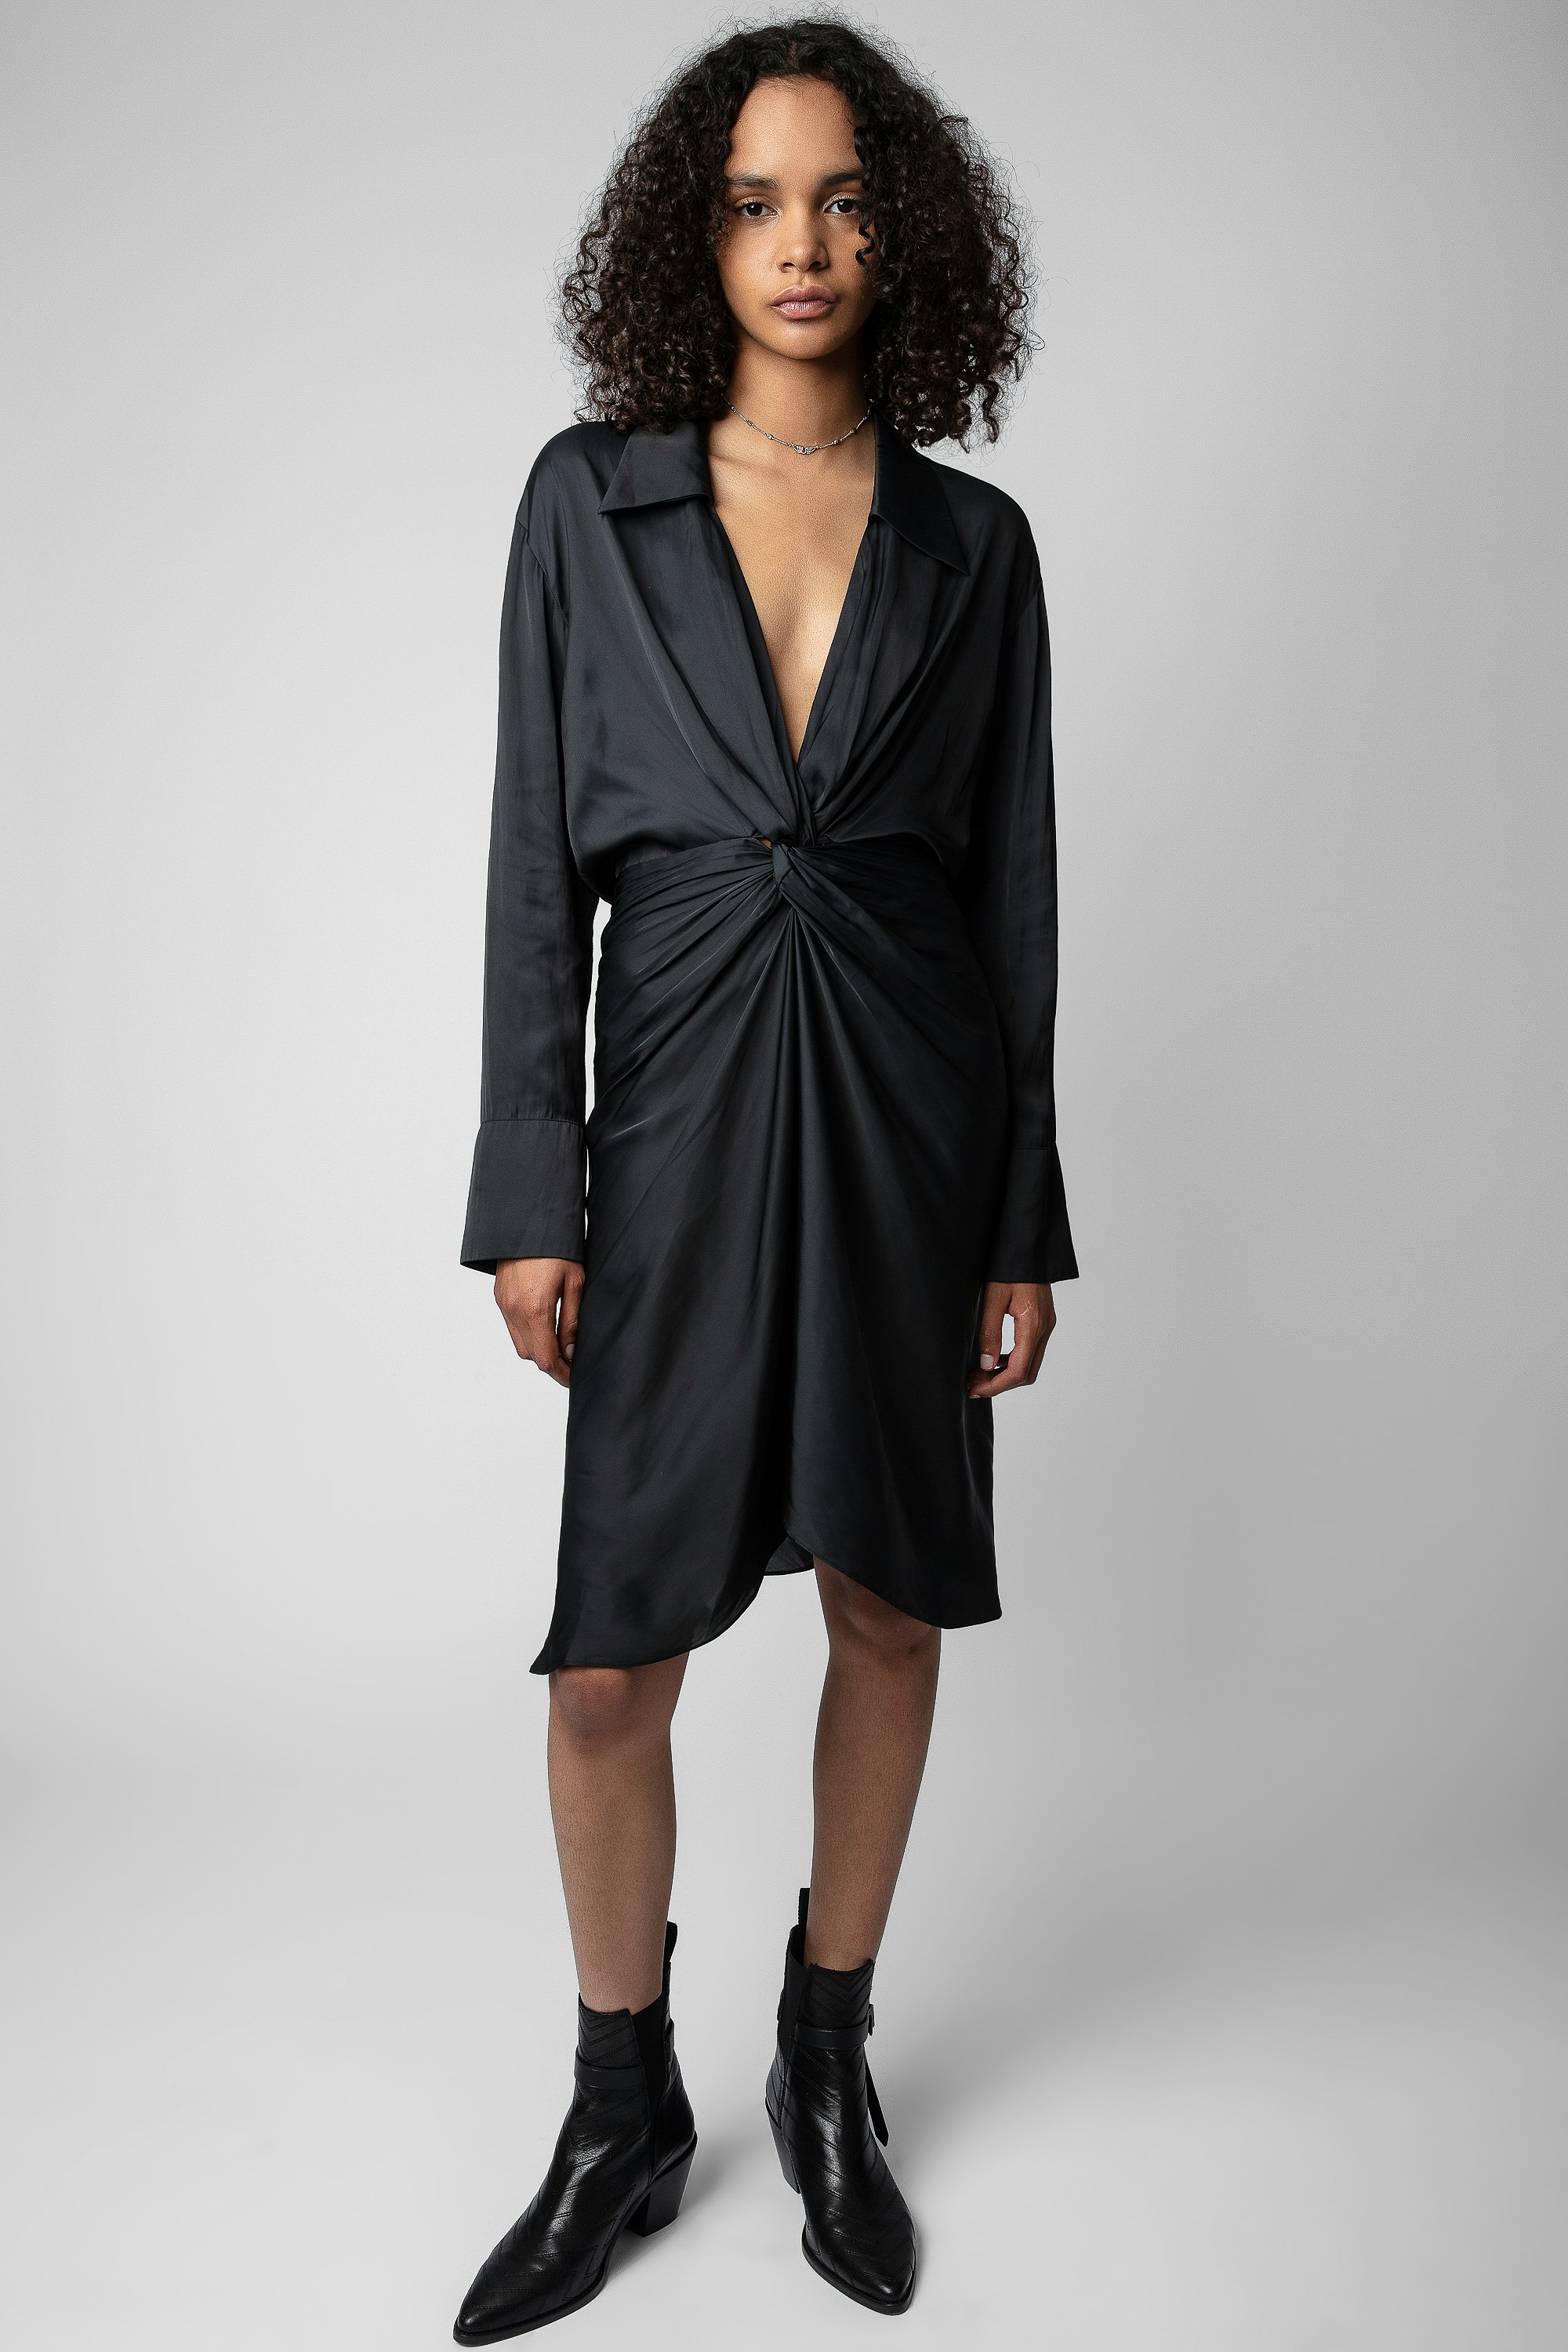 Kleid Rozo Satin - Halblanges, drapiertes Damen-Satinkleid in Schwarz zum Knoten.